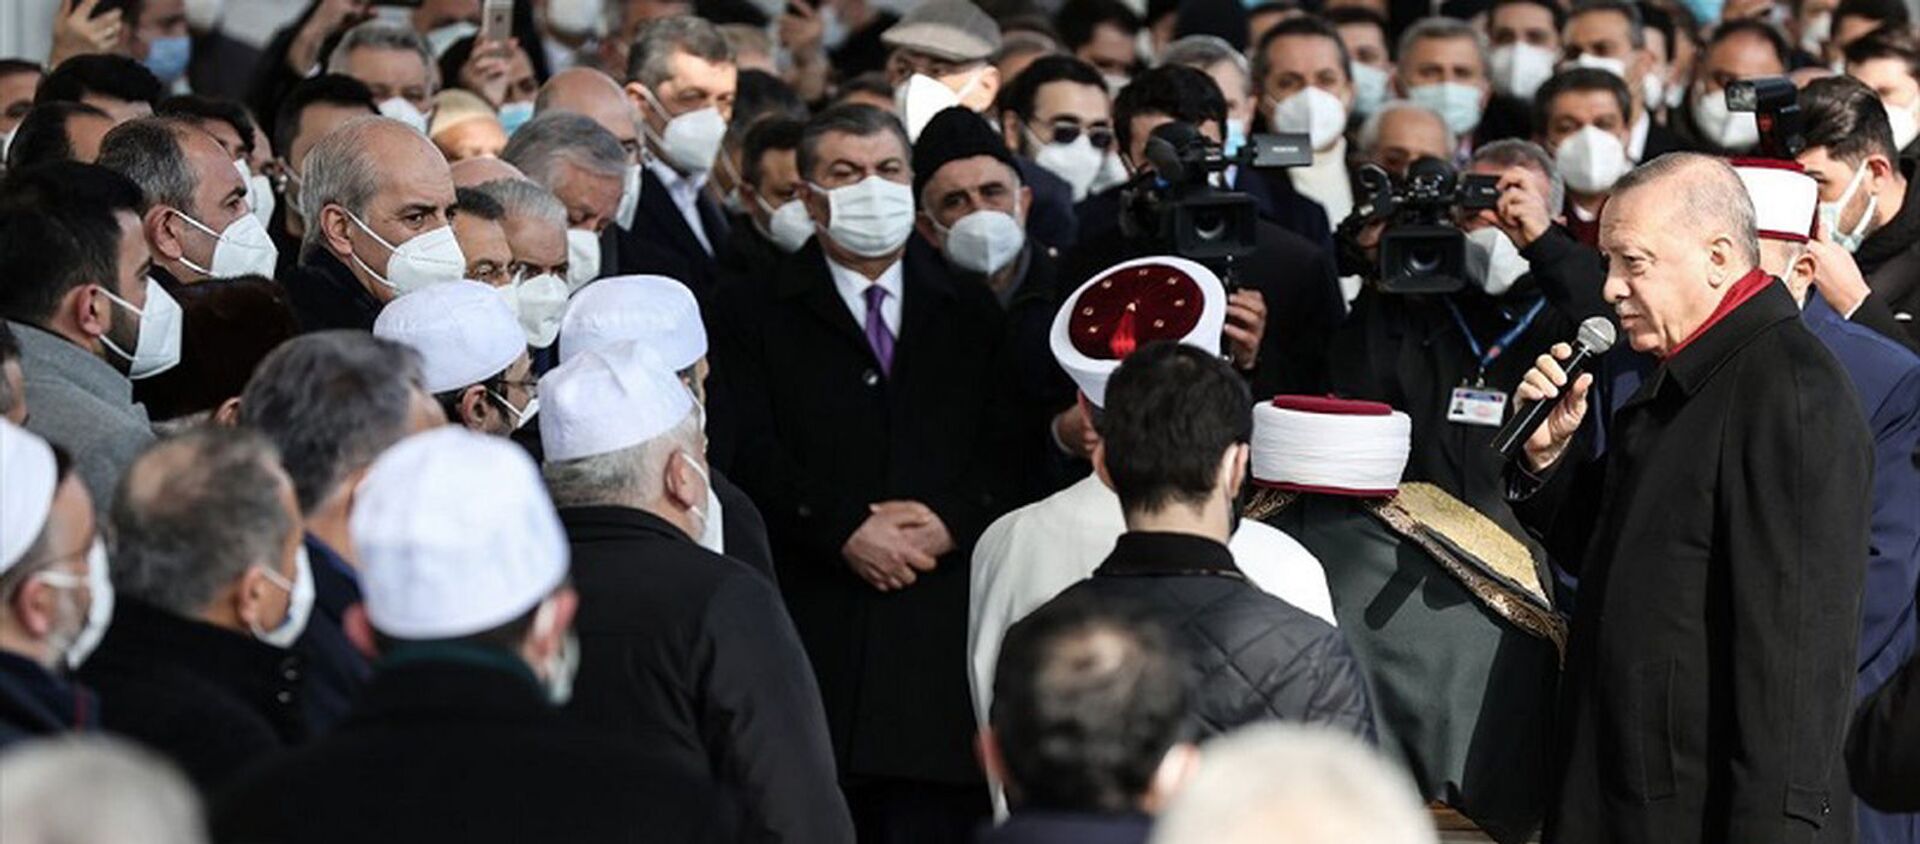 Sağlık Bakanı Koca, Saraç'ın cenazesindeki kalabalık görüntülerle ilgili özür diledi - Sputnik Türkiye, 1920, 24.02.2021